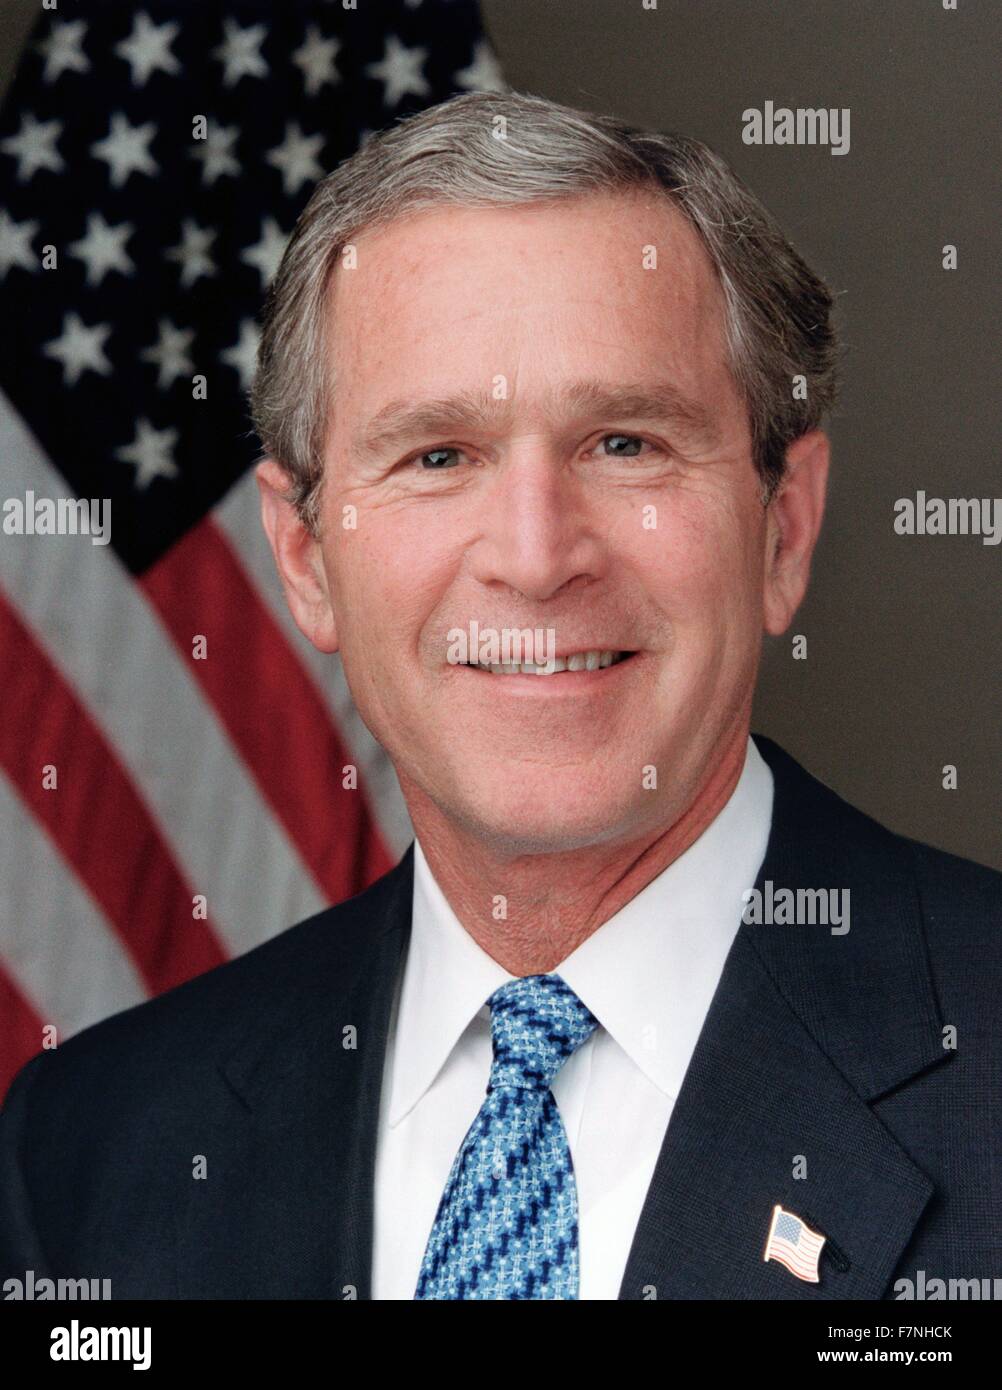 George Walker Bush (geboren 6. Juli 1946) Präsident der Vereinigten Staaten von 2001 bis 2009, und von 1995 bis 2000 der 46. Gouverneur von Texas. Stockfoto